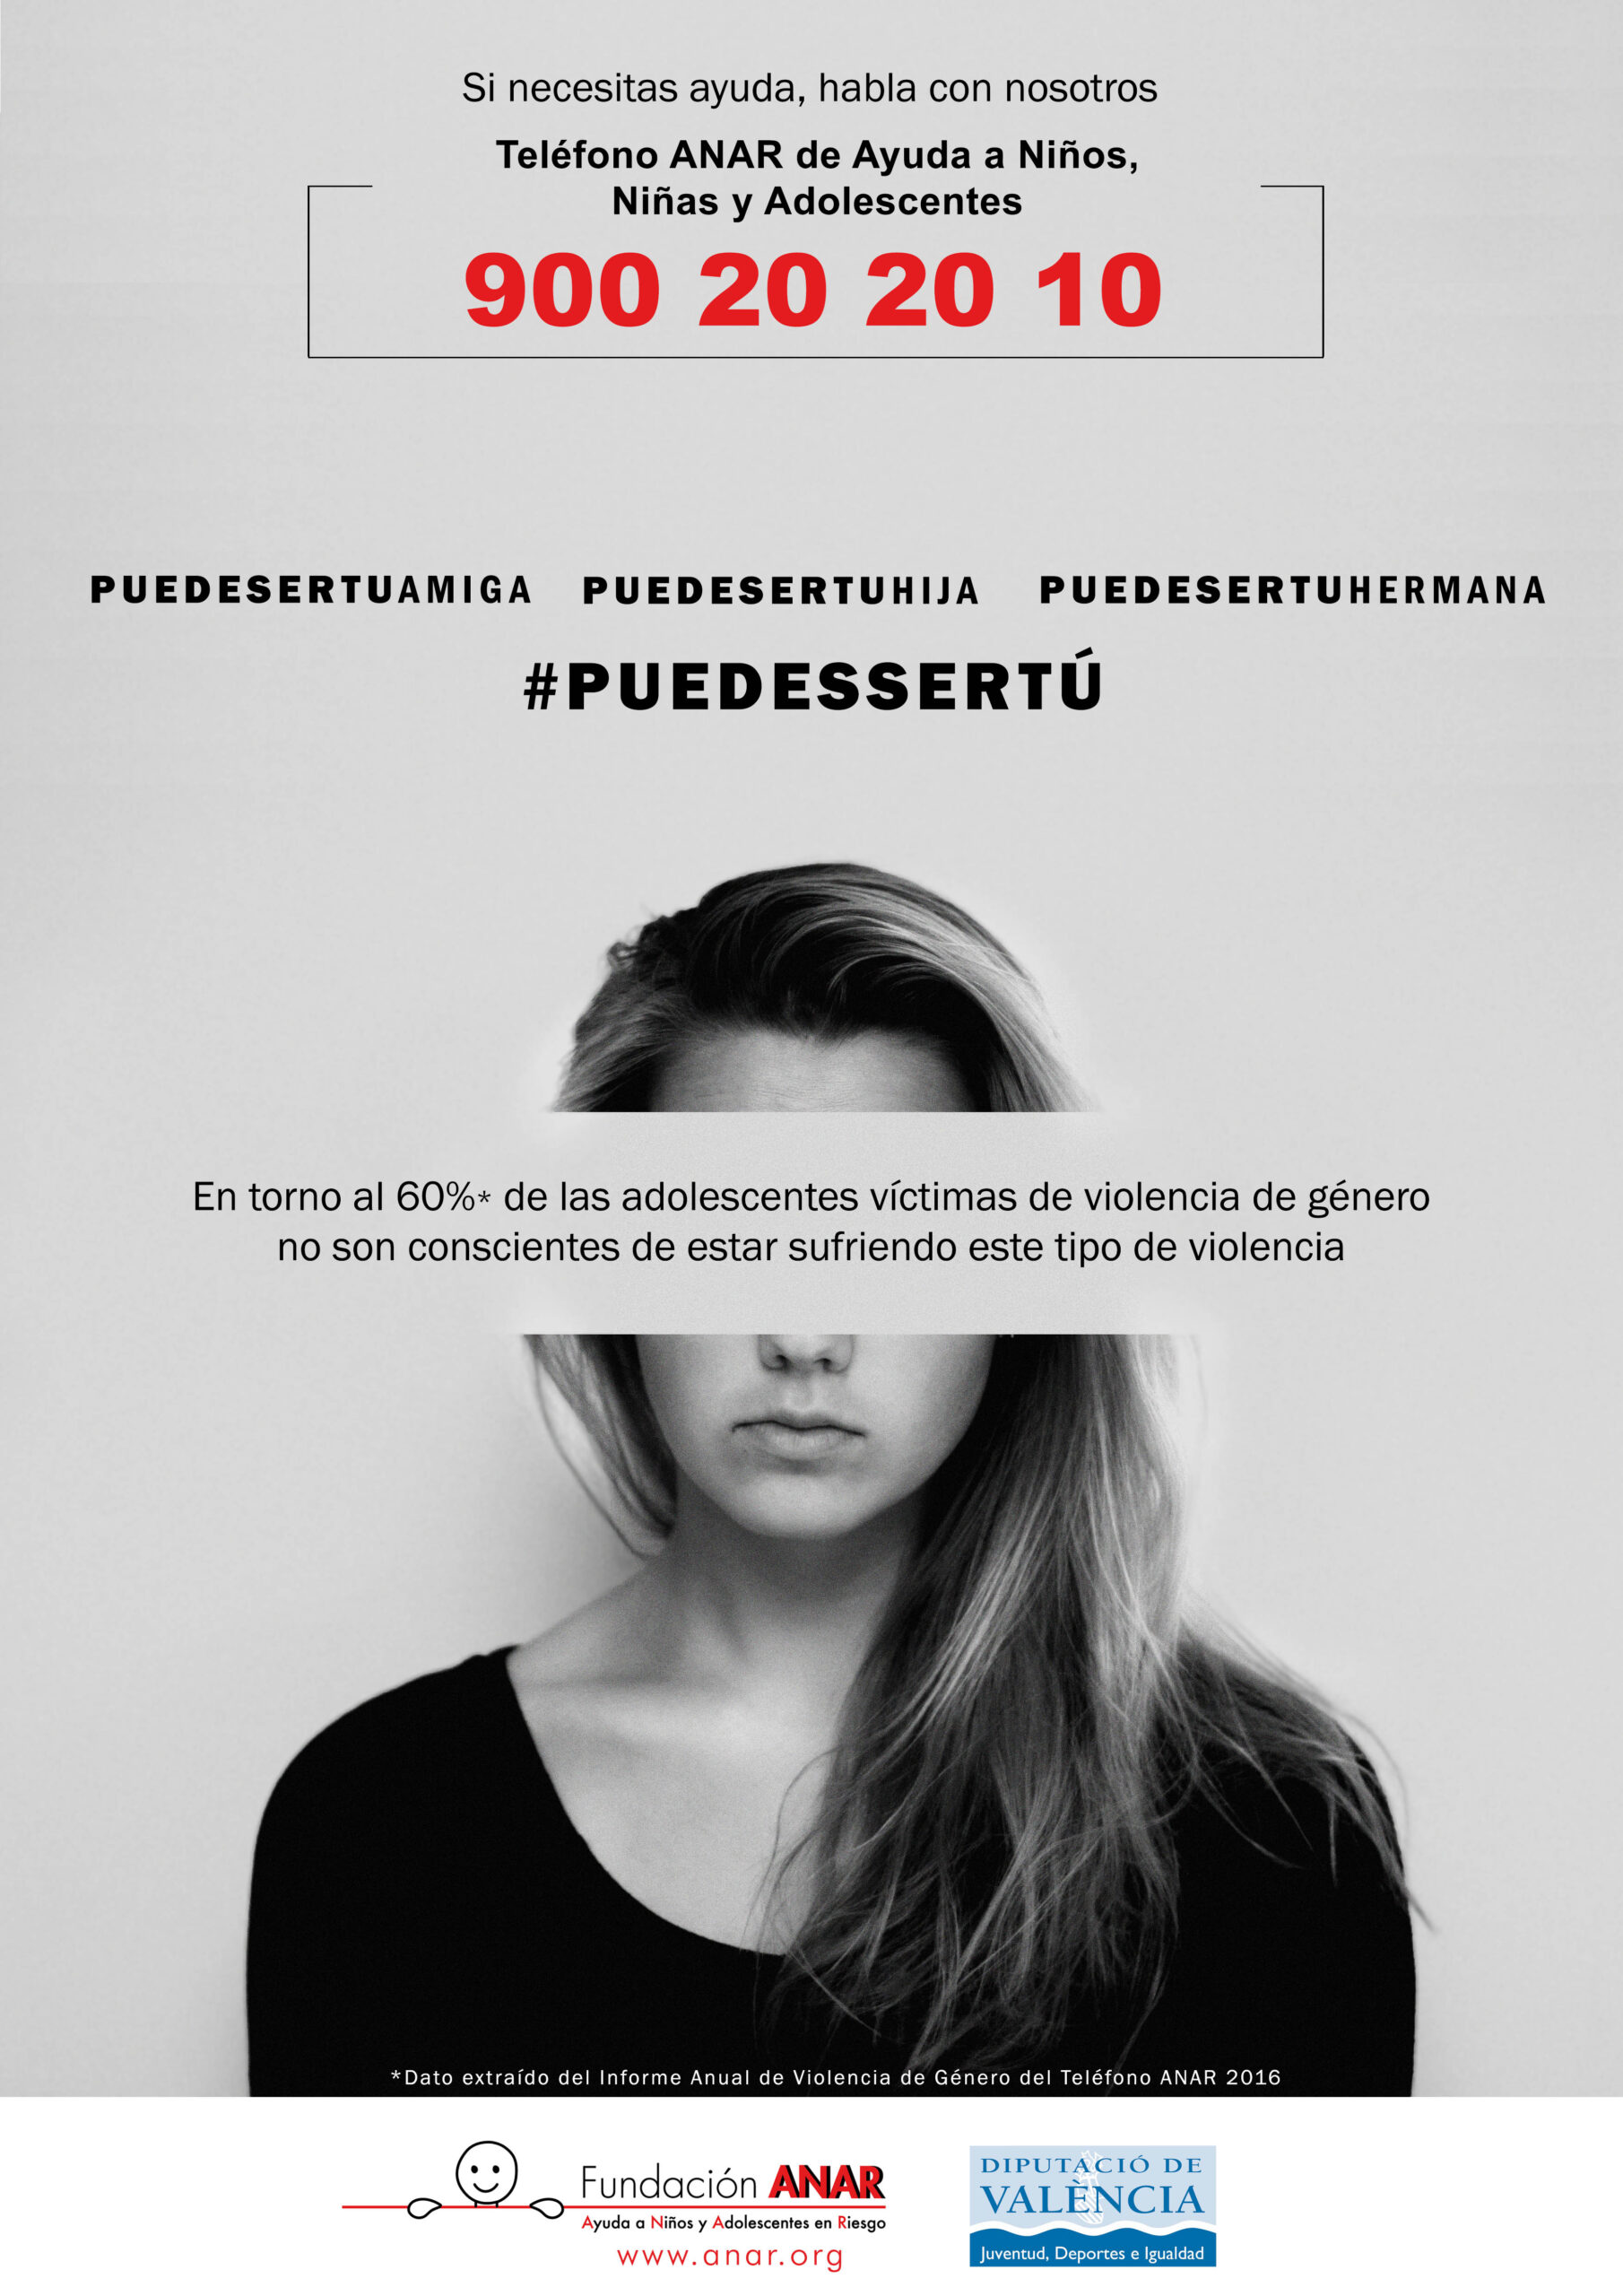 Fundación ANAR y la Diputació de València se unen para concienciar y prevenir la violencia de género en adolescentes